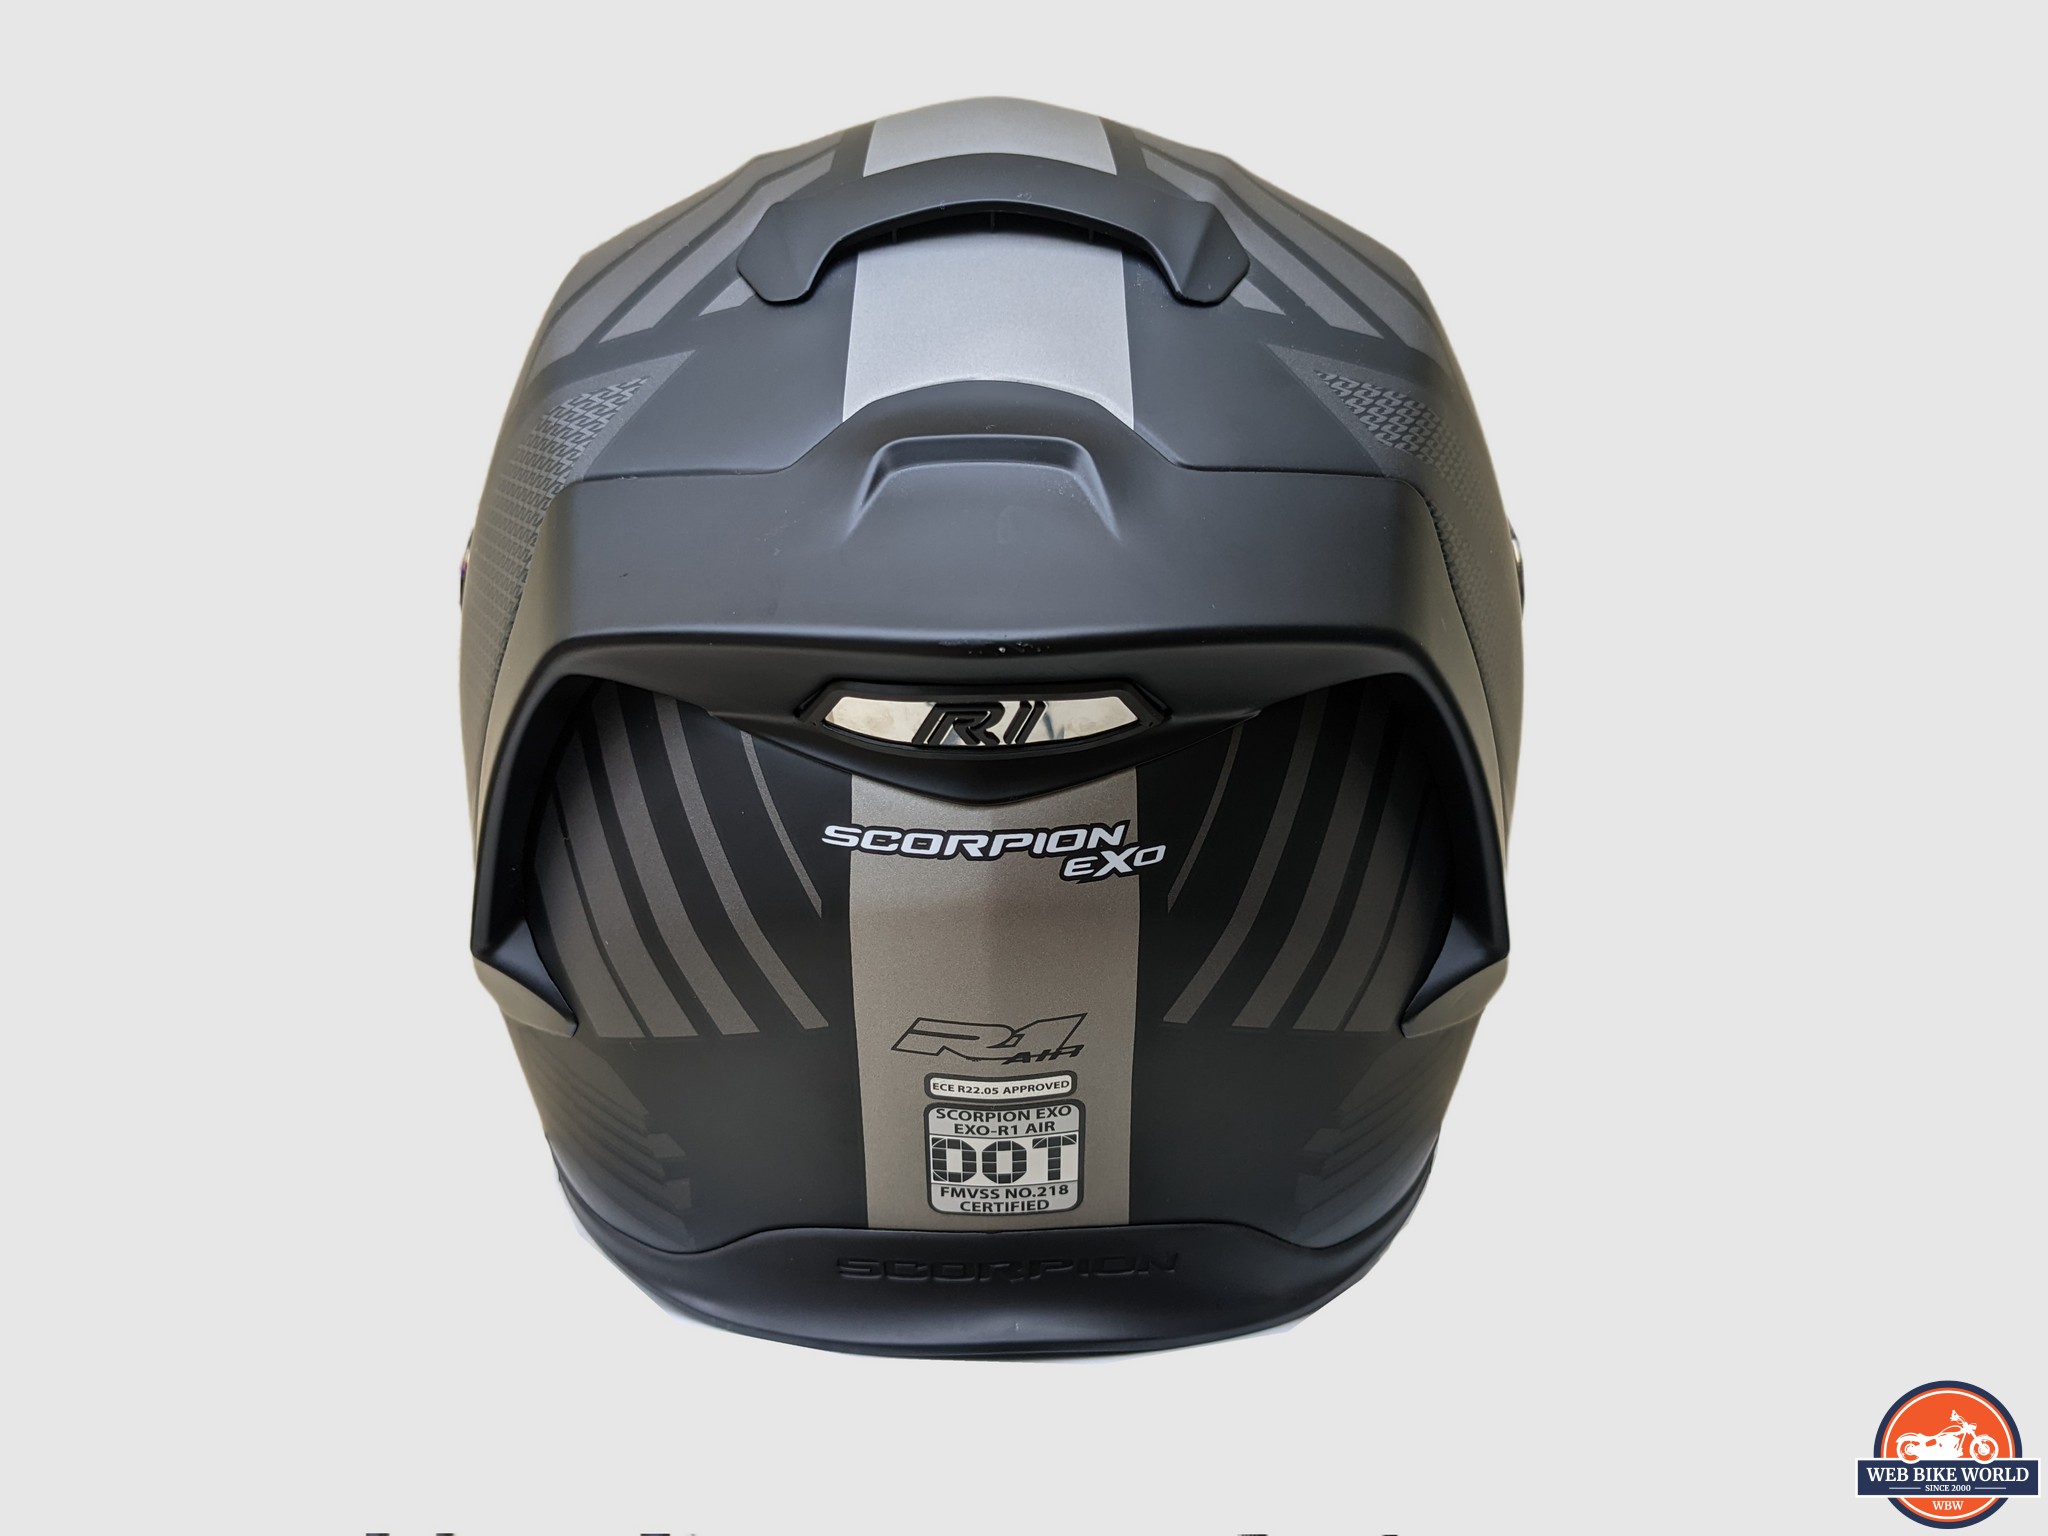 Scorpion R1 Air Juice Helmet Hands-On Review | Honda NC700 Forum